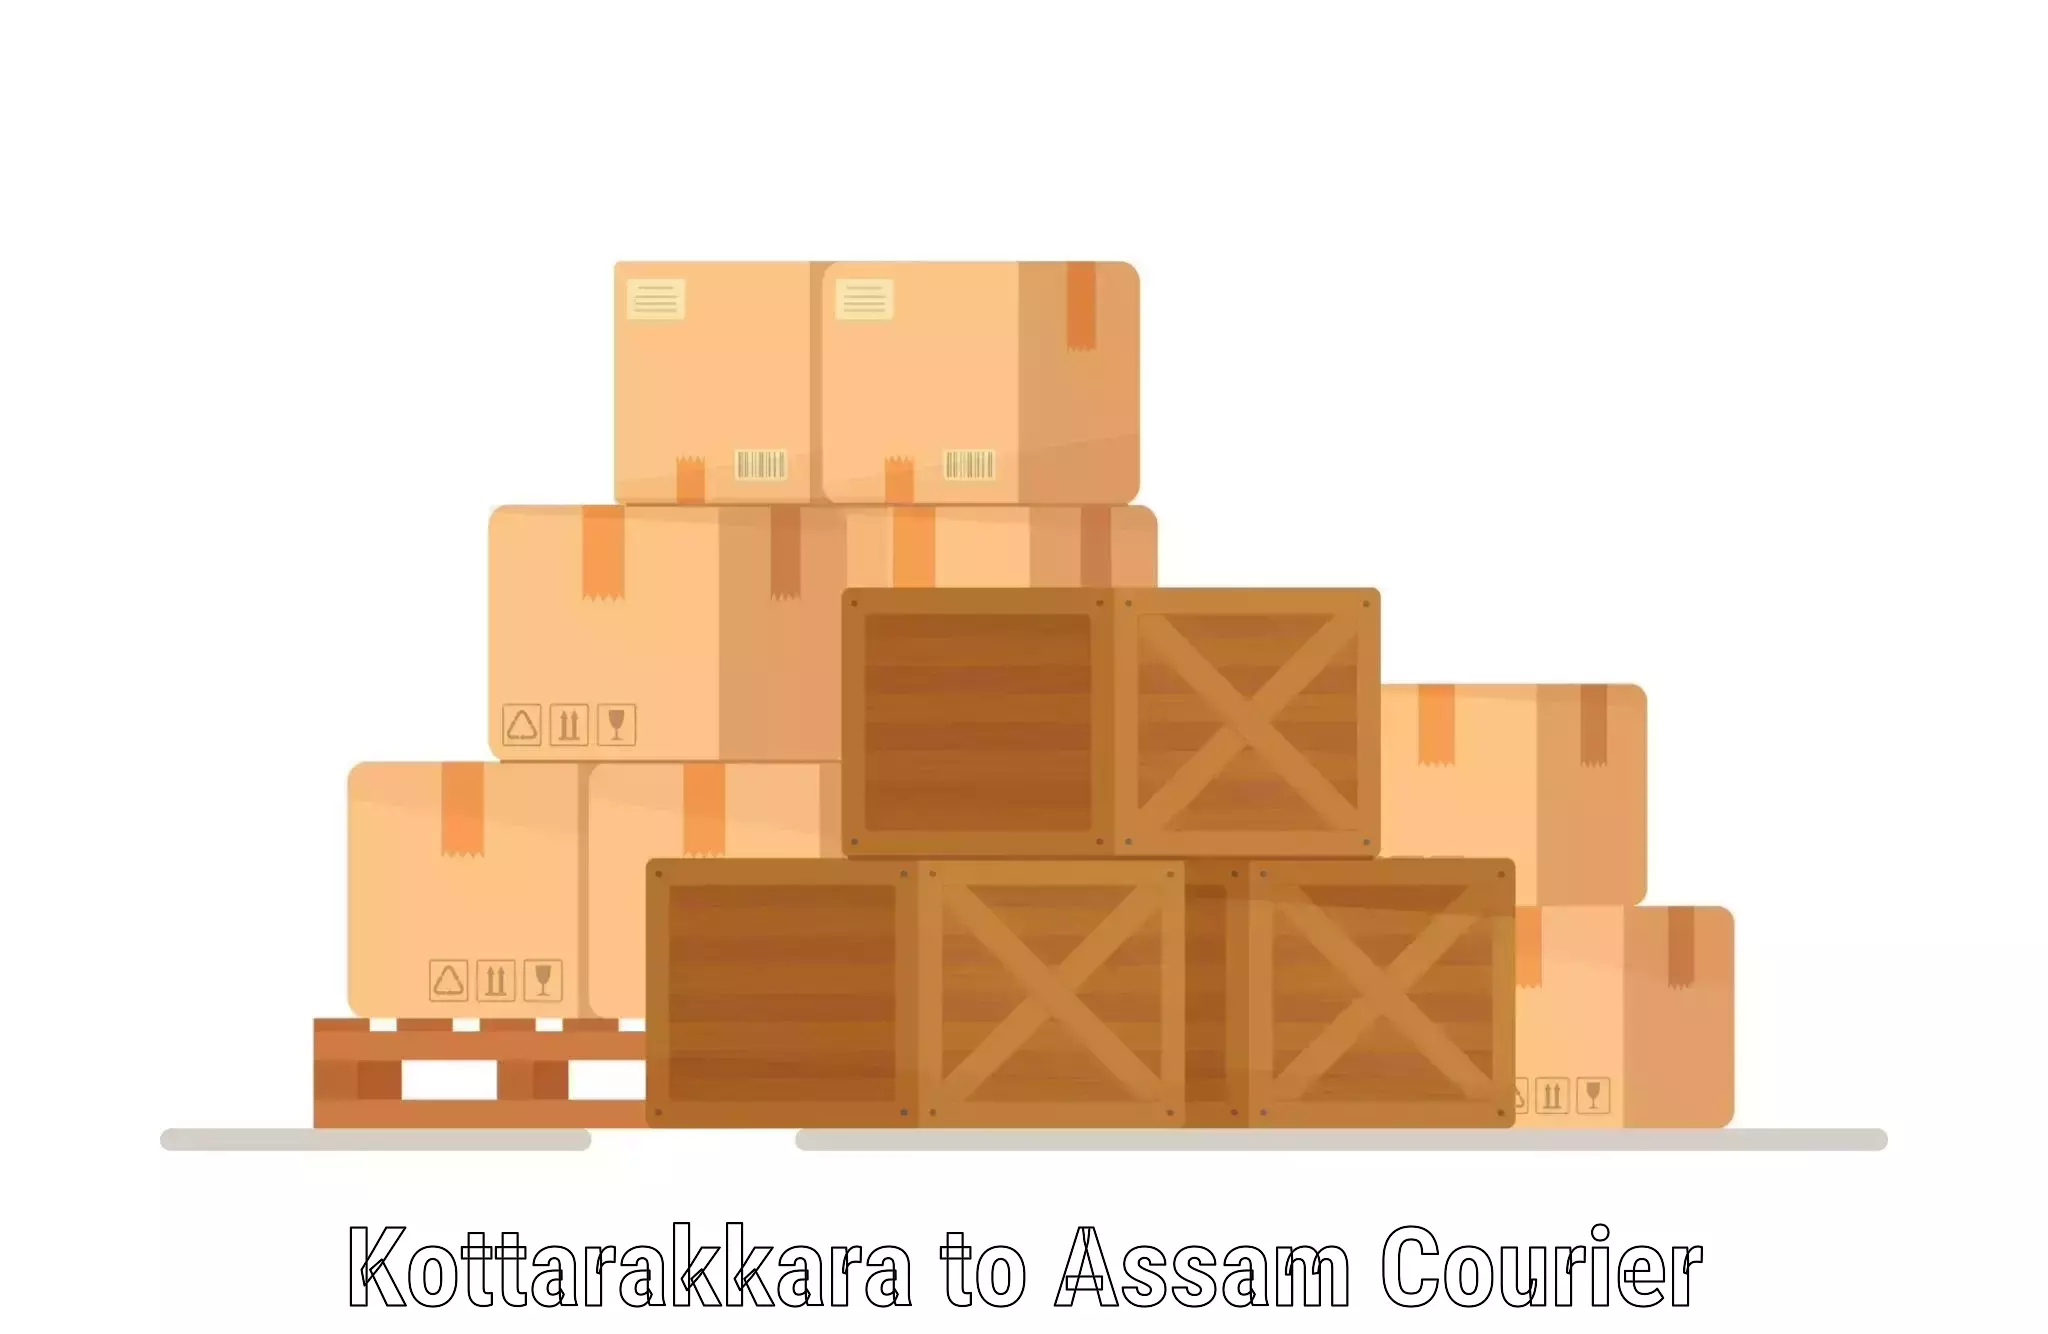 Efficient cargo handling Kottarakkara to Rowta